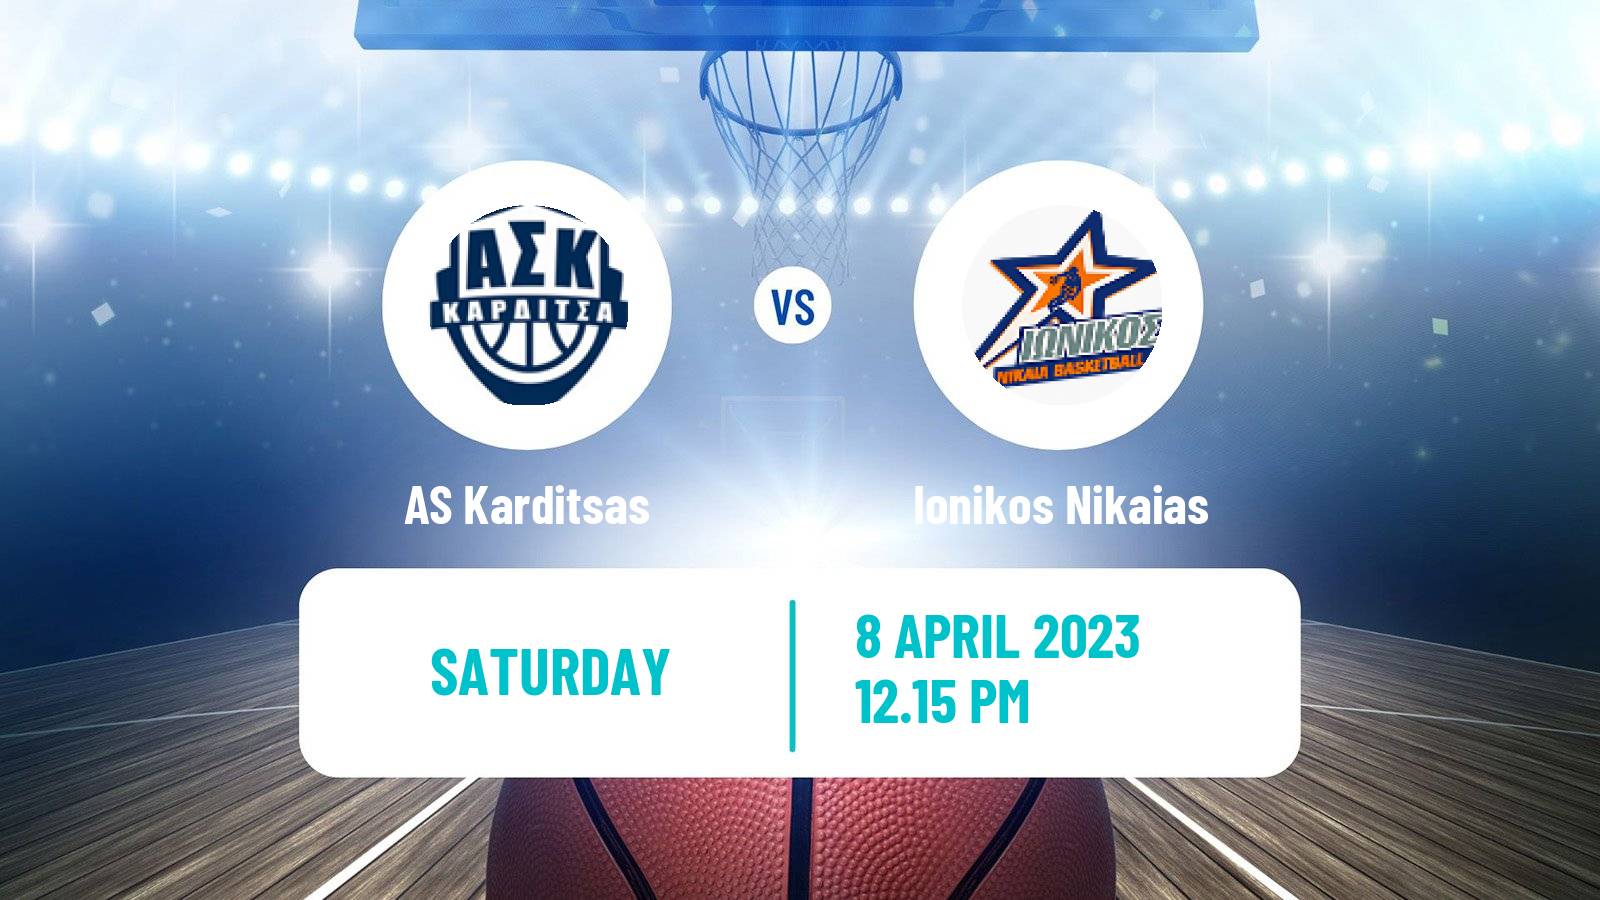 Basketball Greek Basket League A1 Karditsas - Ionikos Nikaias